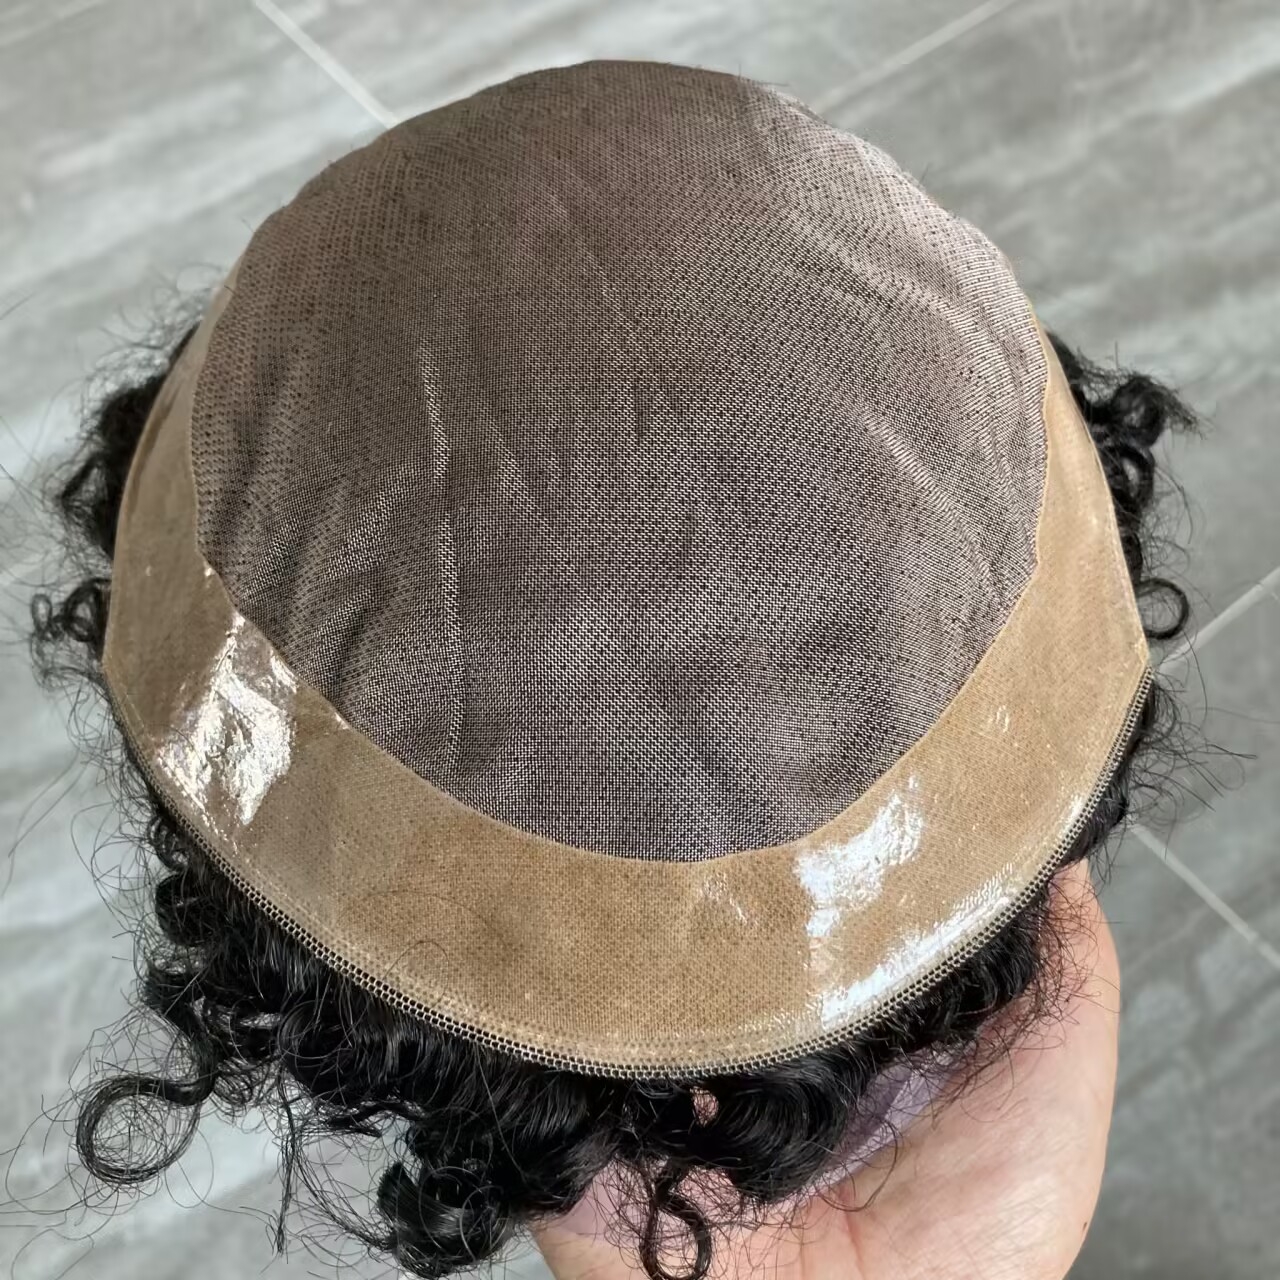 22mm lockigt hårstycke fin mono pu bas manlig hårprotes män toupee 100% indiskt mänskligt hår hållbara exhuast -system män peruk